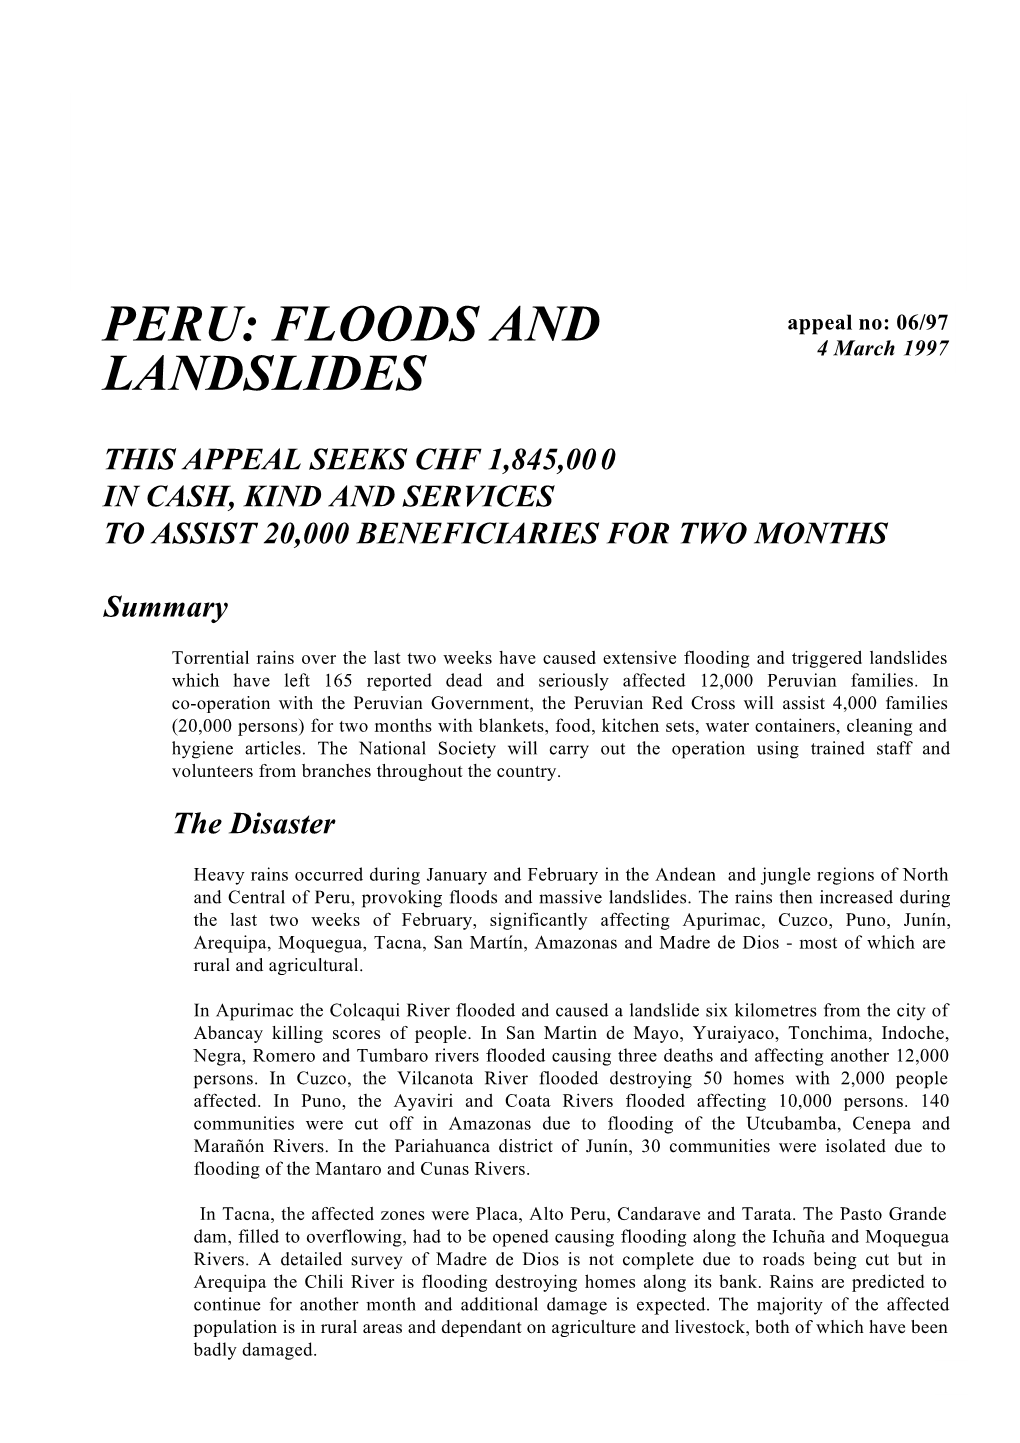 Peru Floods and Landslides